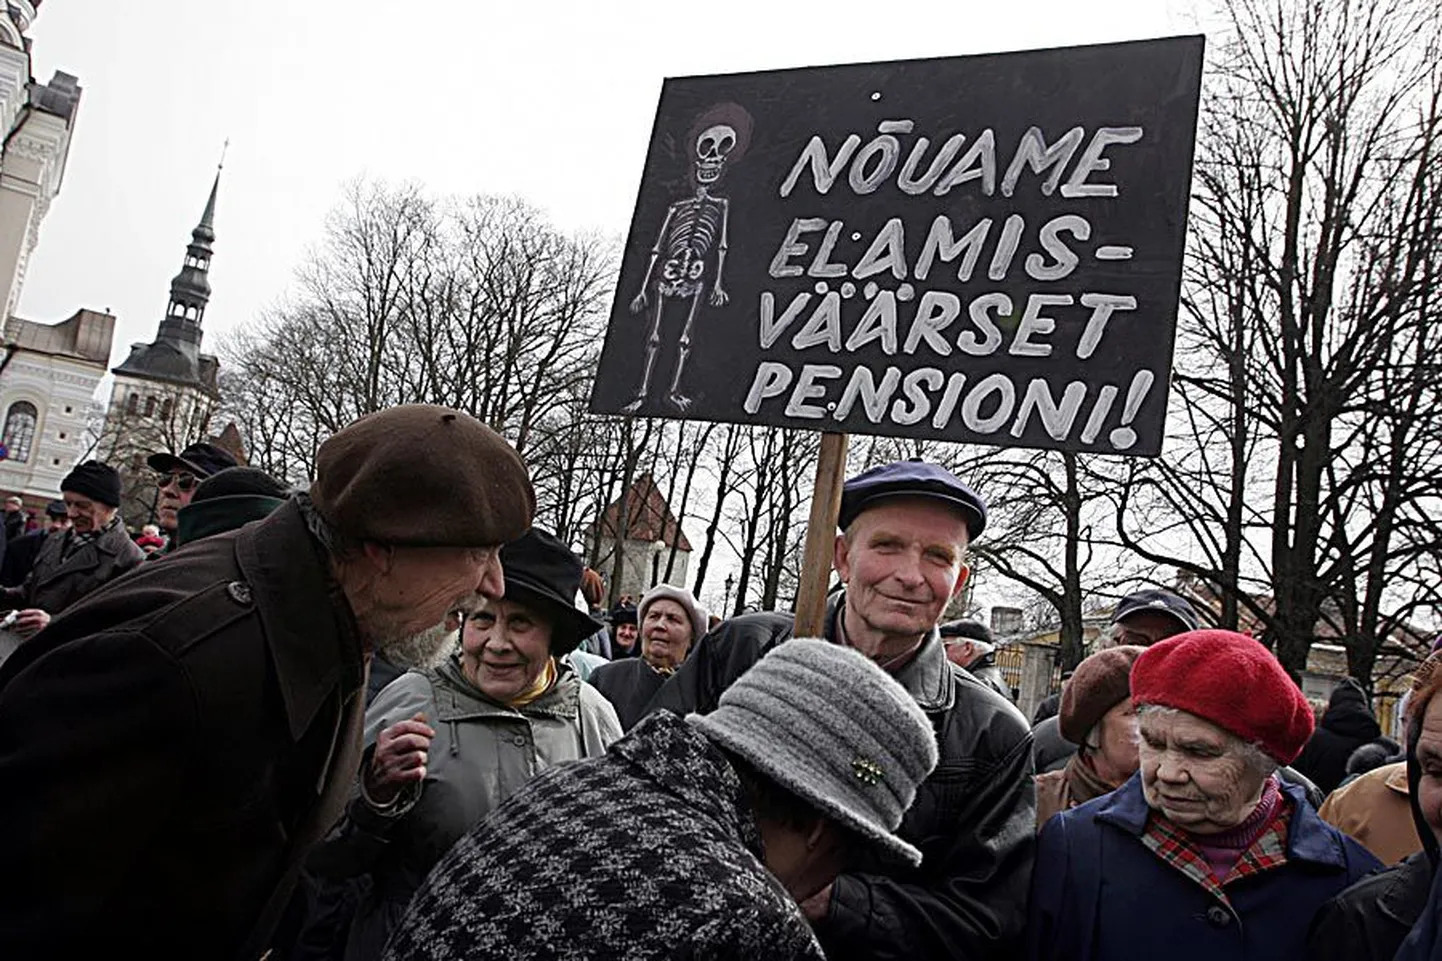 Kriitilisematel aegadel on pensionärid tulnud Tallinnas oma nõudmistega tänavale. Foto pärineb 2005. aastast.